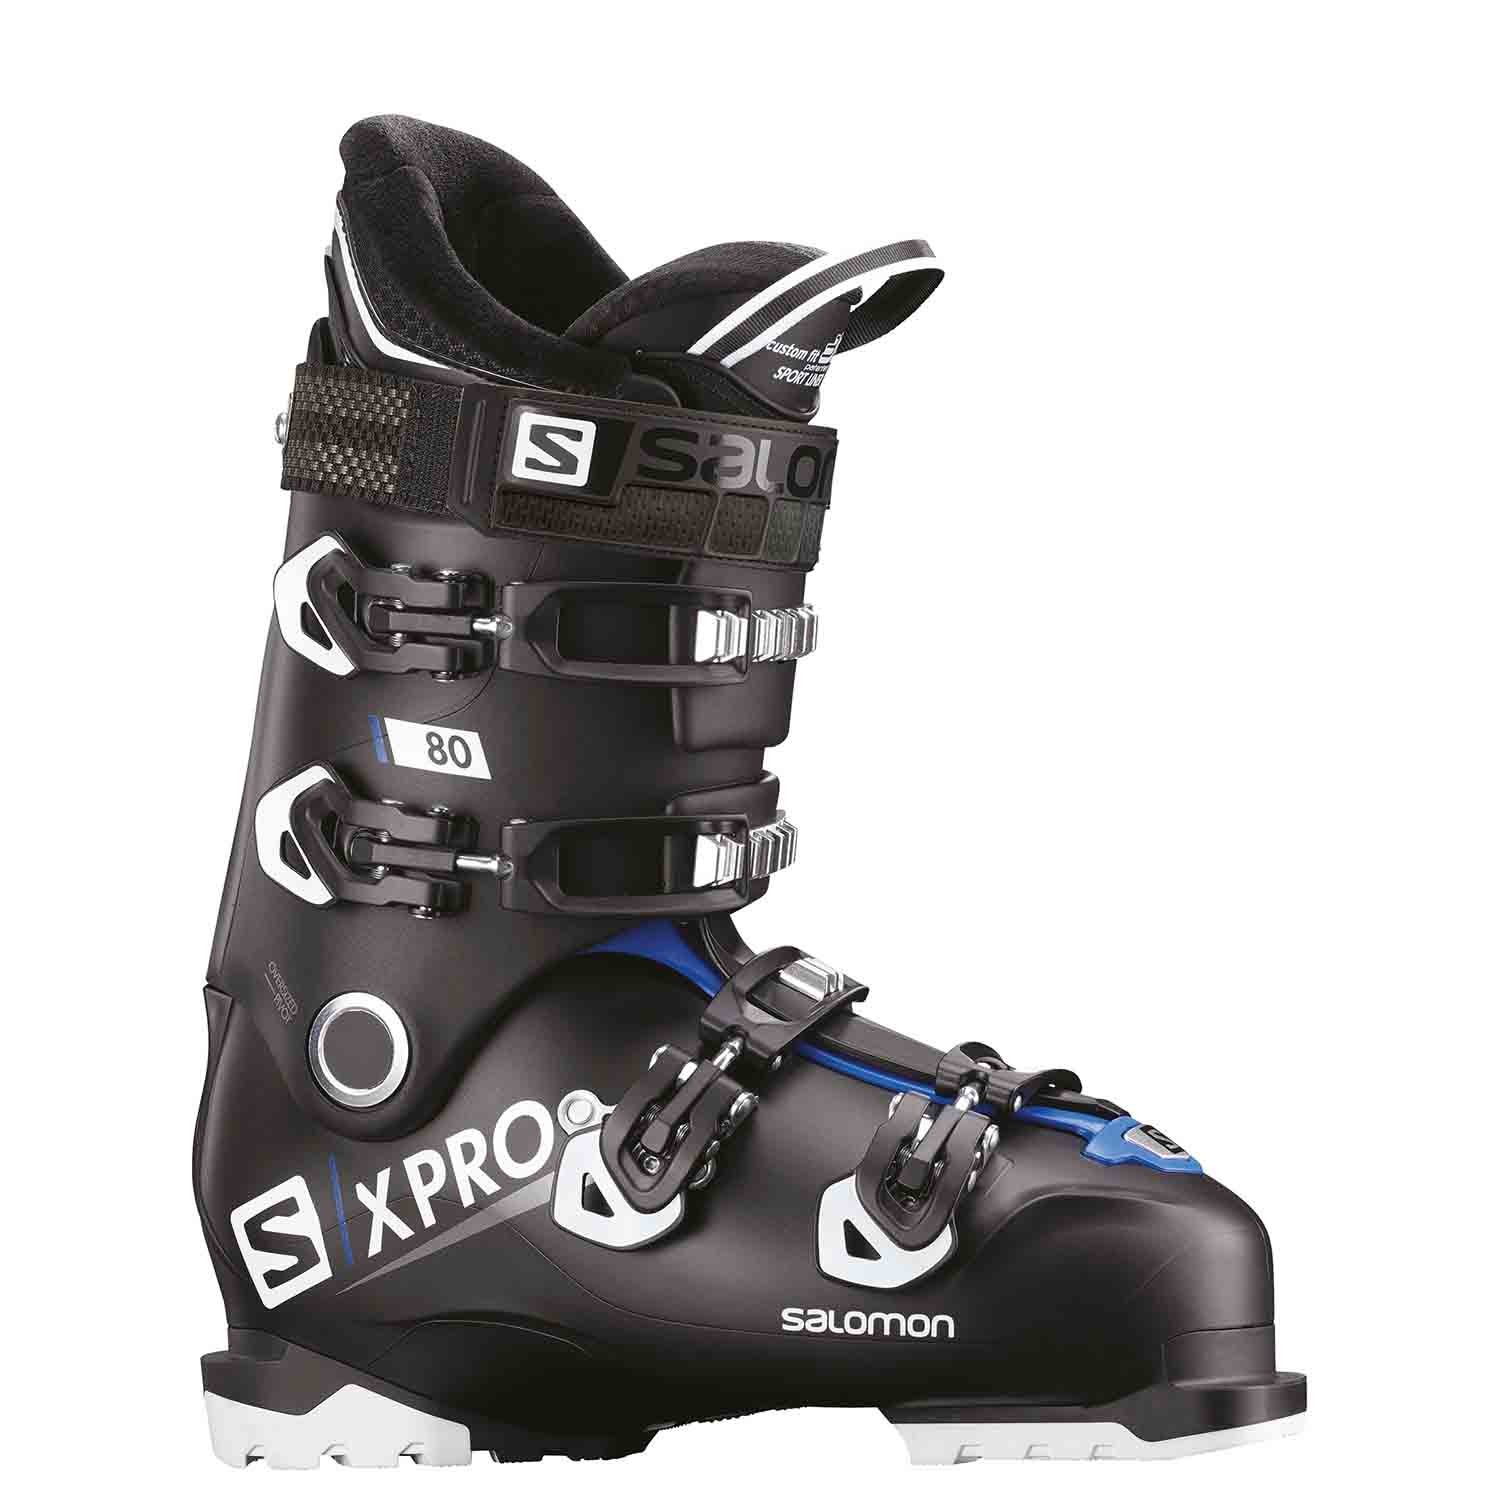 Lad os gøre det arabisk strejke Salomon X Pro 80 Ski Boots 2019 | The Ski Monster